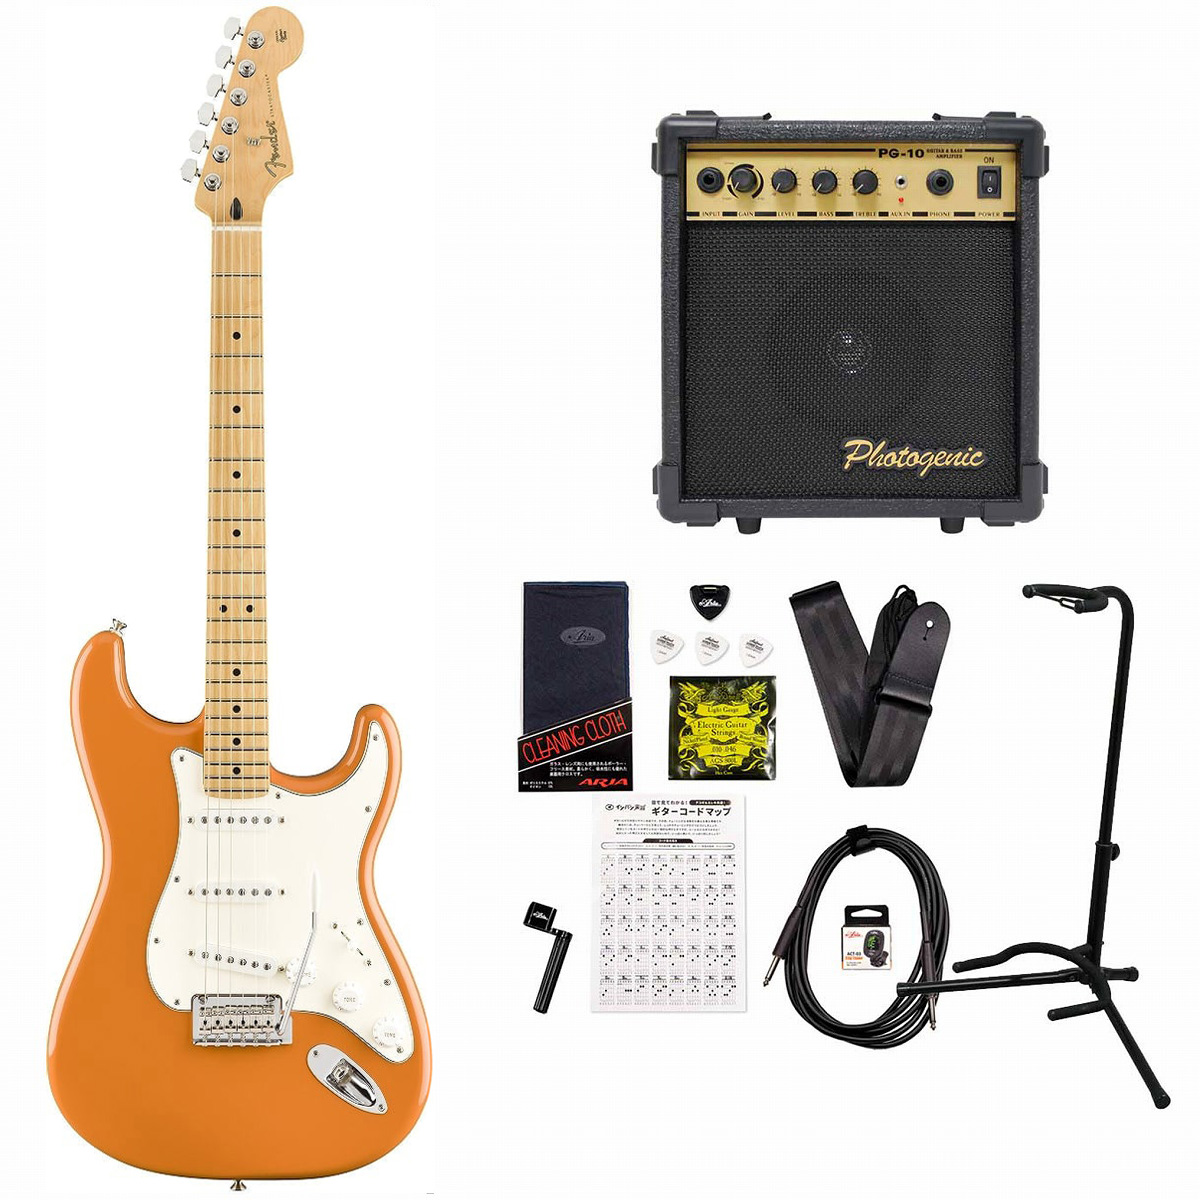 Fingerboard　PG-10アンプ付属エレキギター初心者セット　Player　Orange　Maple　Capri　Stratocaster　Fender　イシバシ楽器